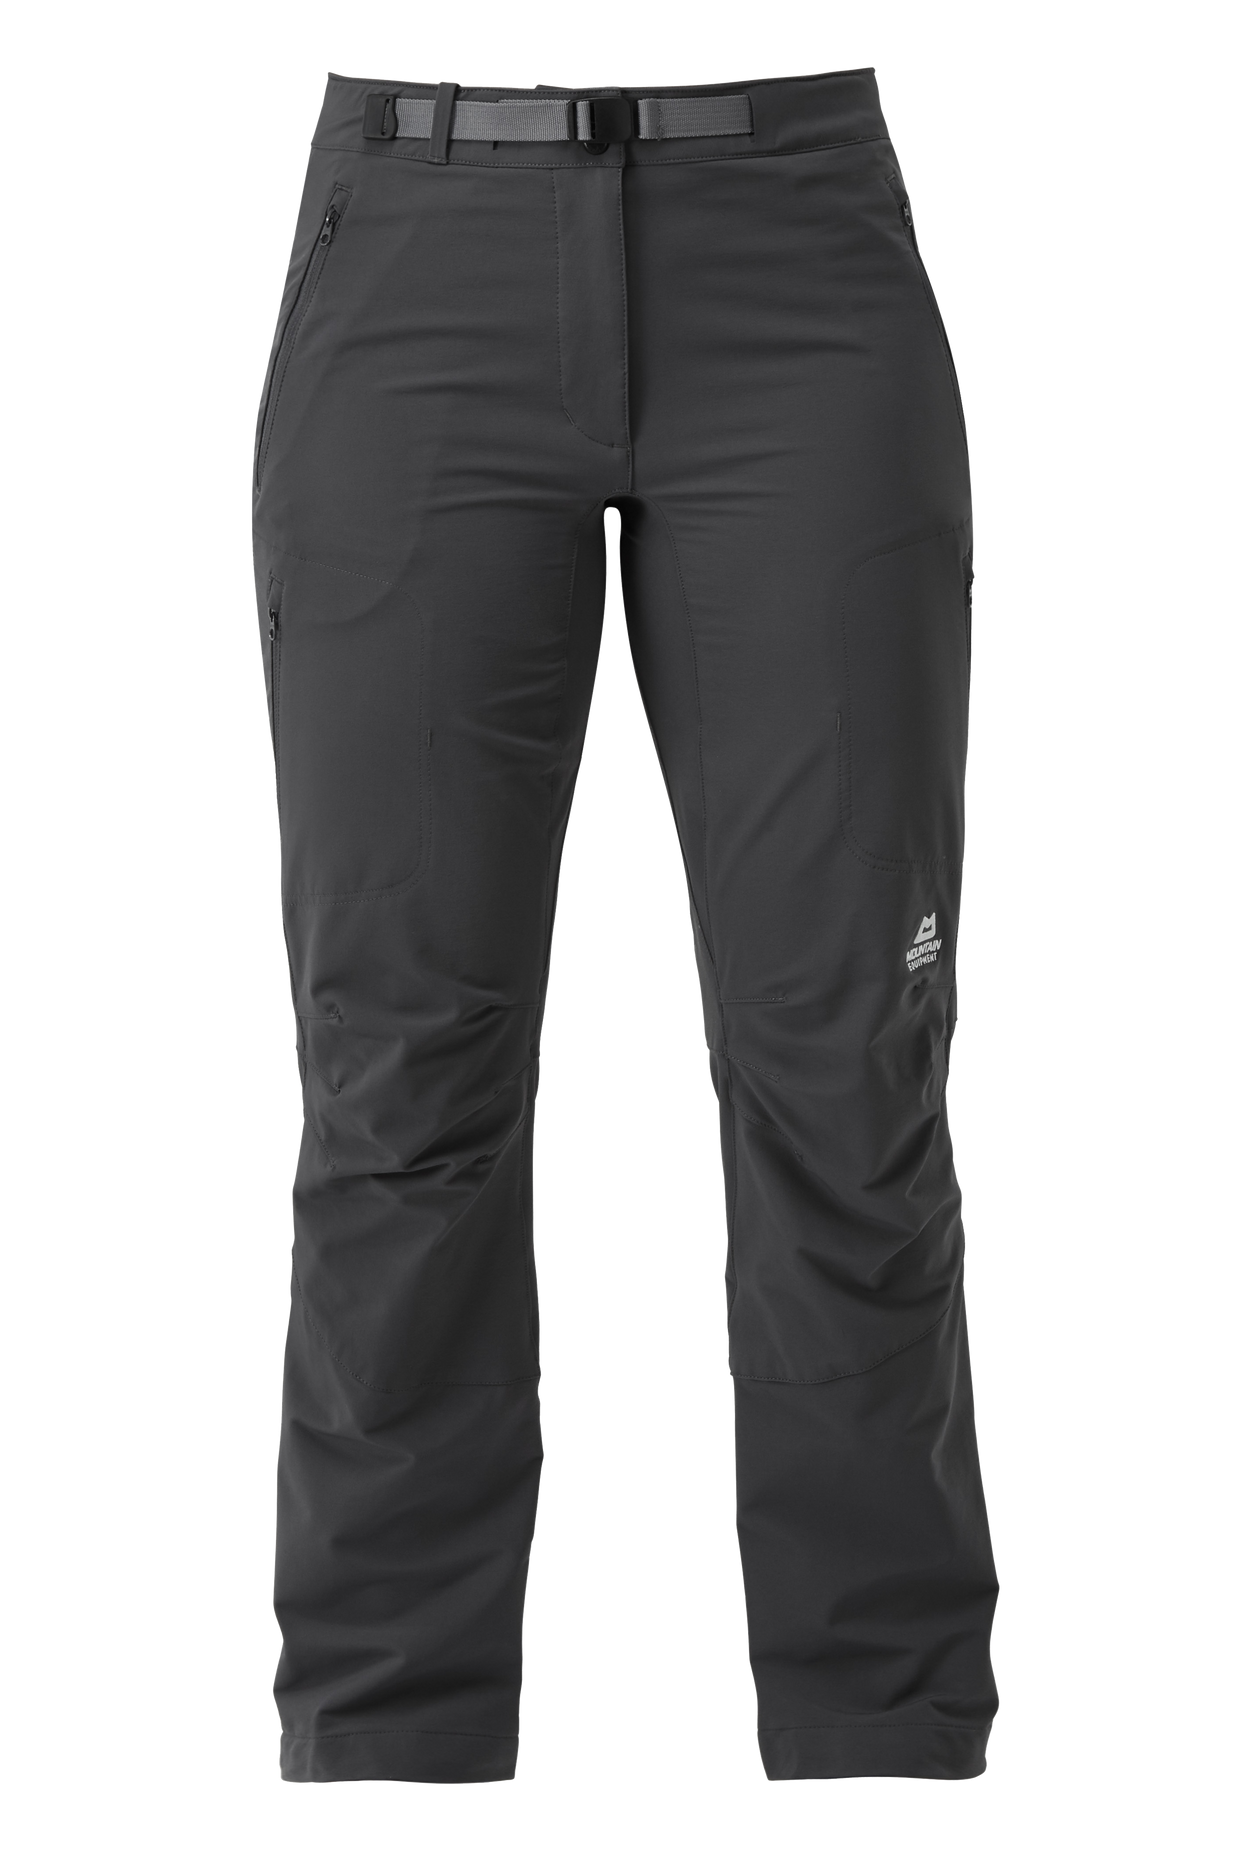 Mountain Equipment dámské softshellové kalhoty Chamois Wmns Pant - prodloužené Barva: Anvil Grey, Velikost: 8/XS